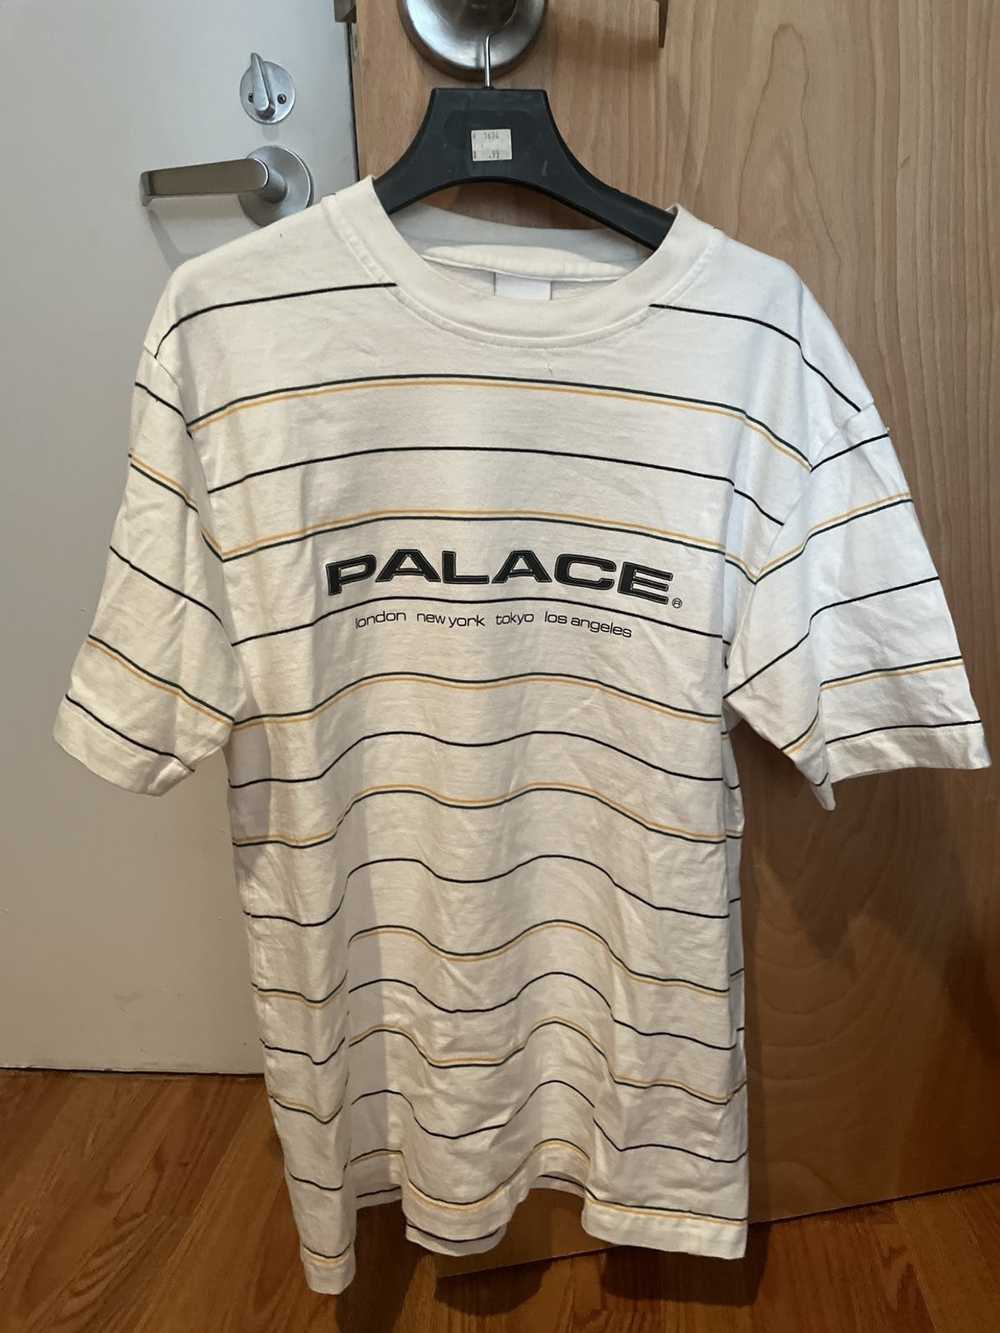 Palace Palace T-Shirt - image 1